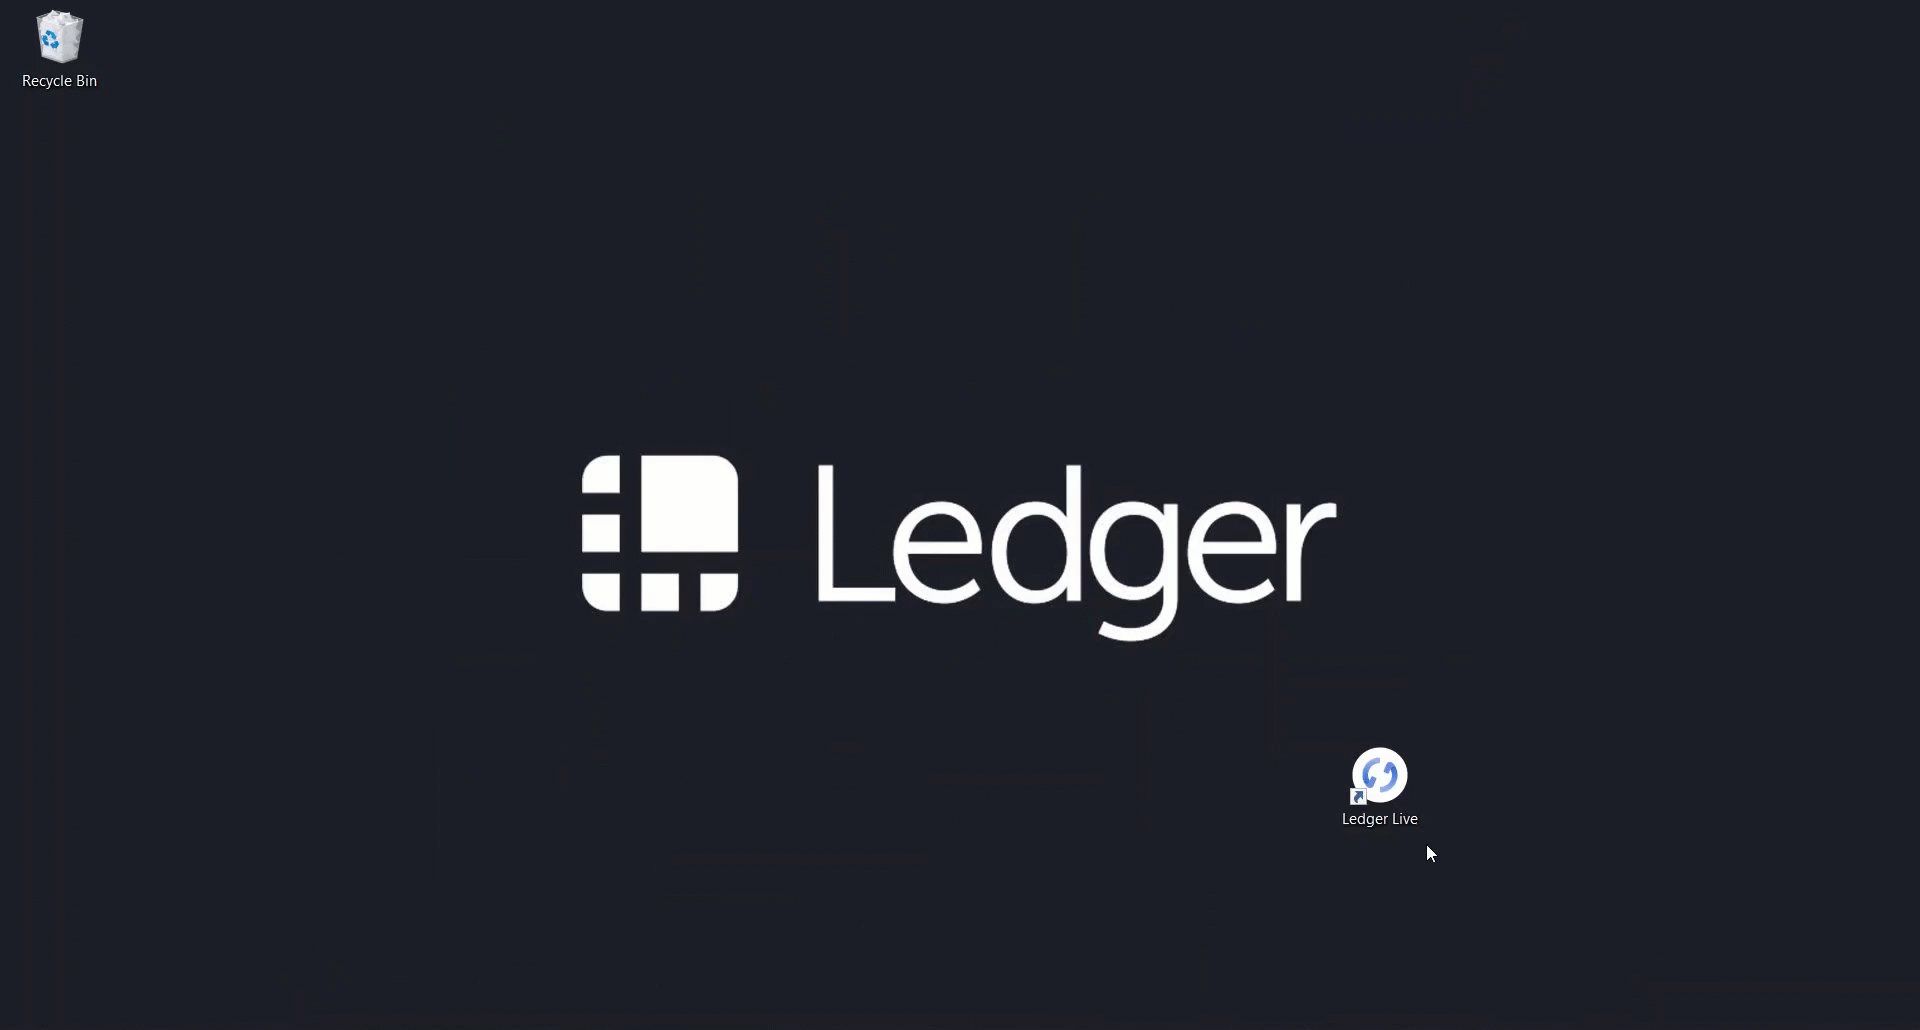 Live Manager doesn't see the ledger nano S · Issue # · LedgerHQ/ledger-live-desktop · GitHub